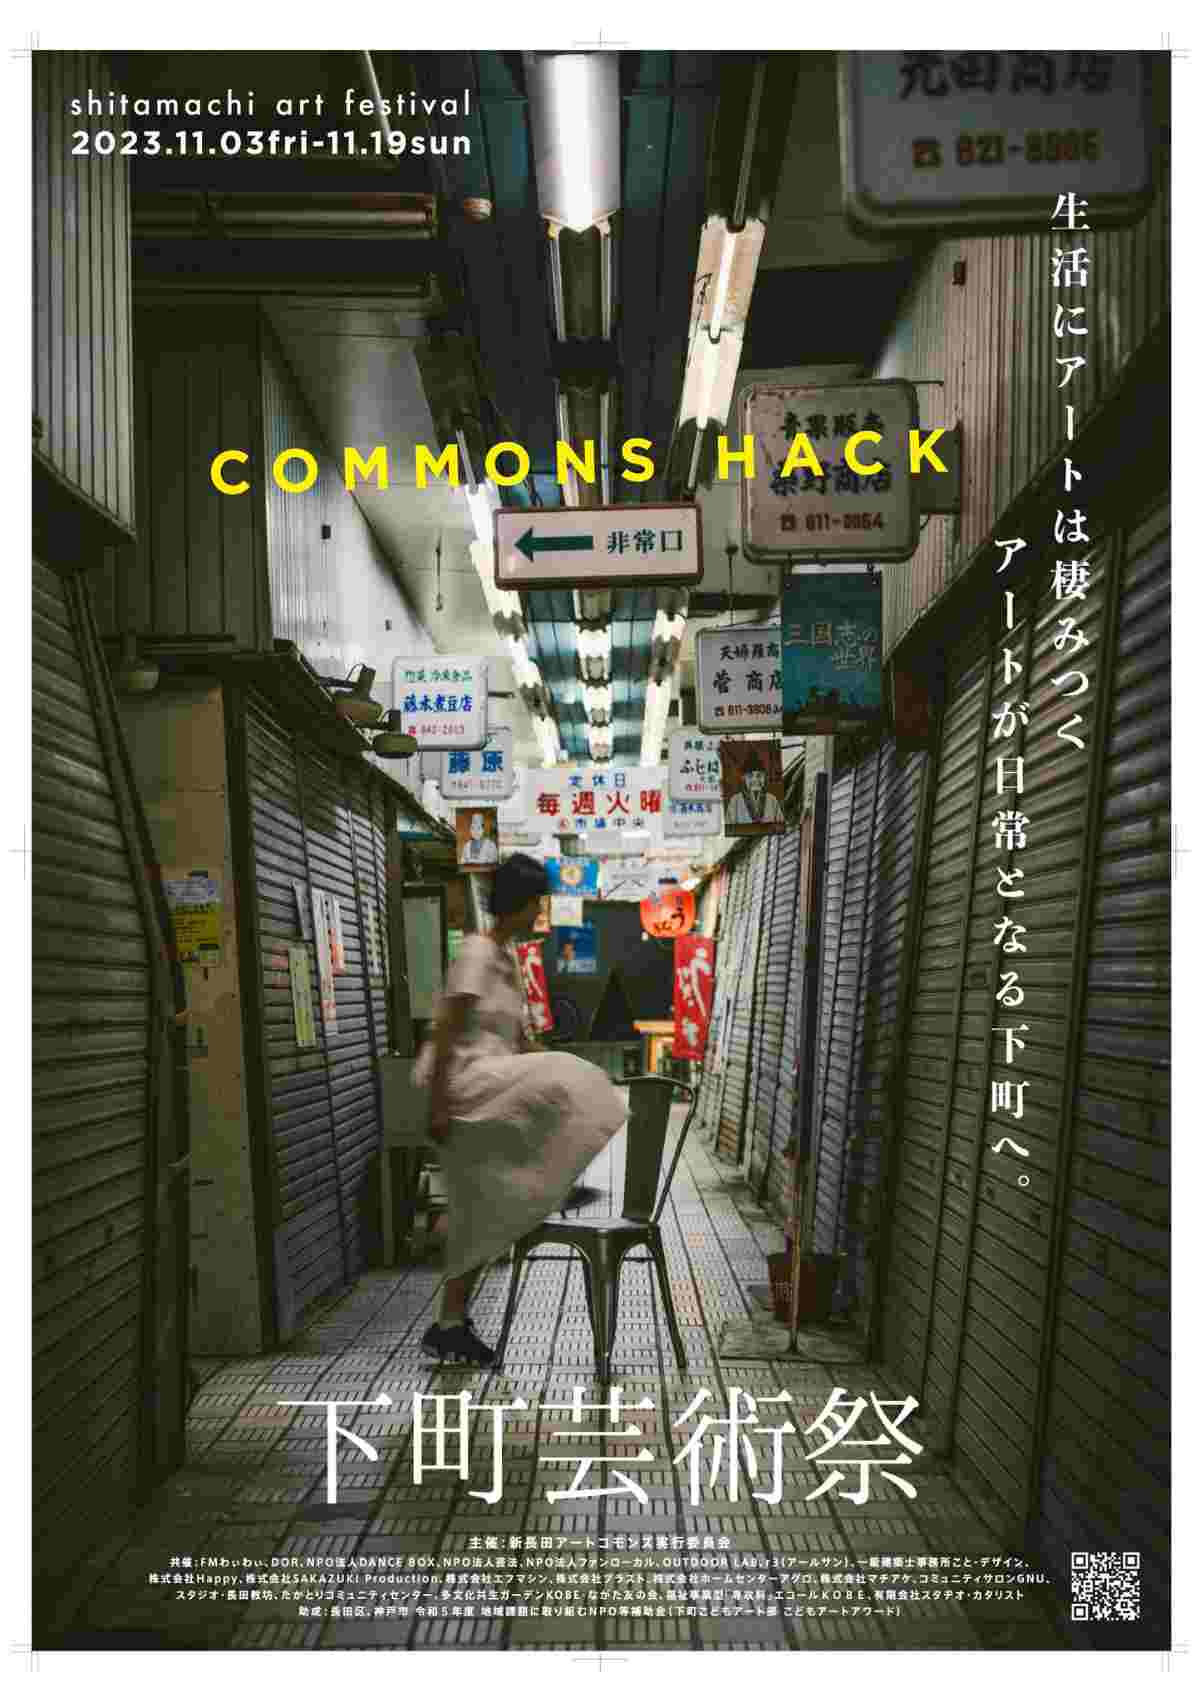 長田区の各地で「下町芸術祭2023 COMMONS HACK」開催　神戸市 [画像]